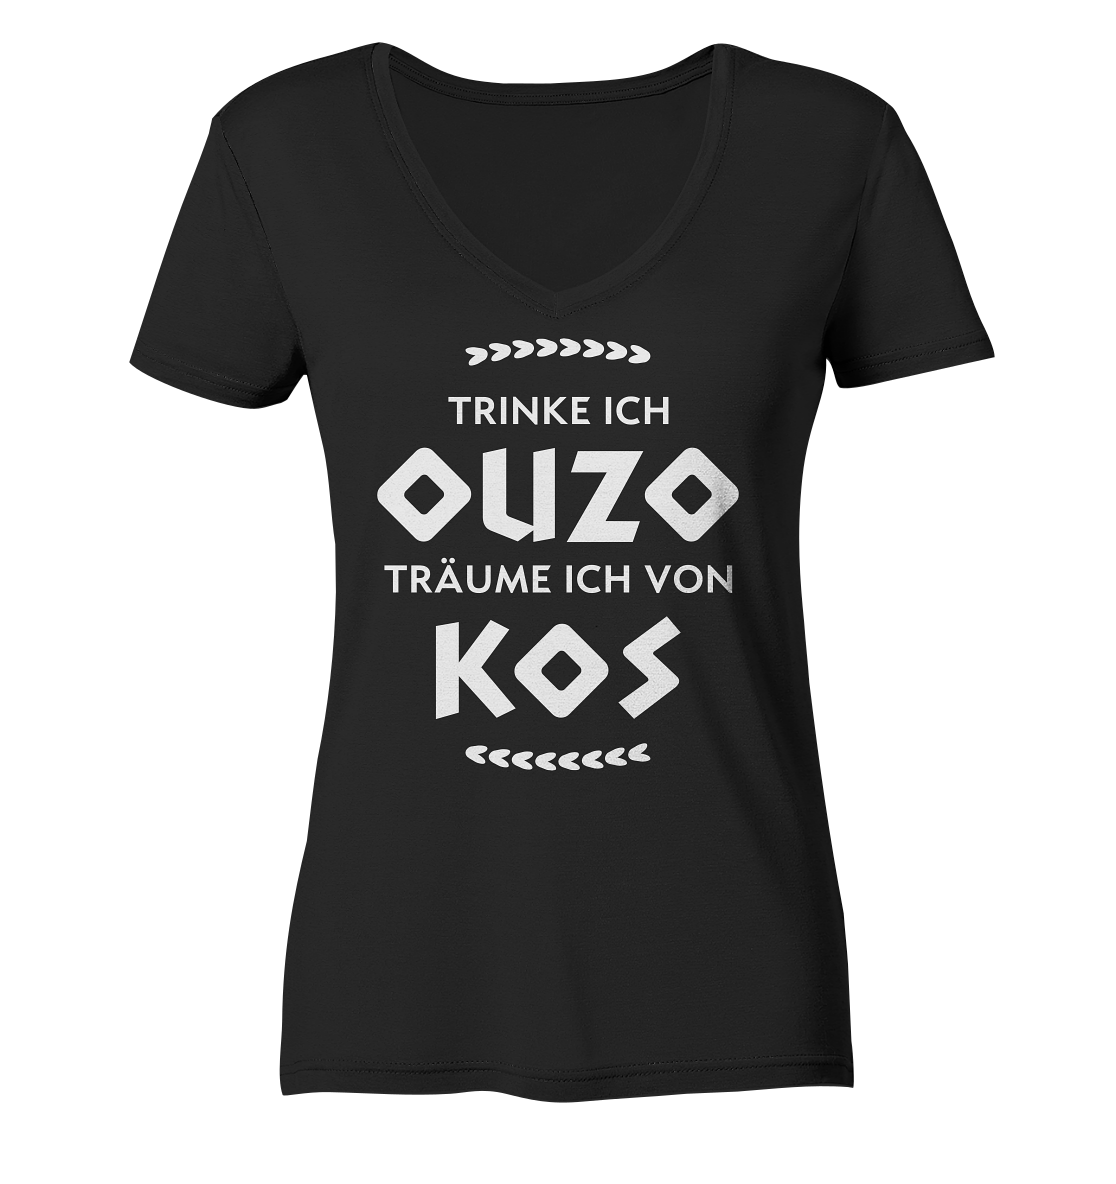 Trinke ich Ouzo träume ich von Kos - Ladies Organic V-Neck Shirt